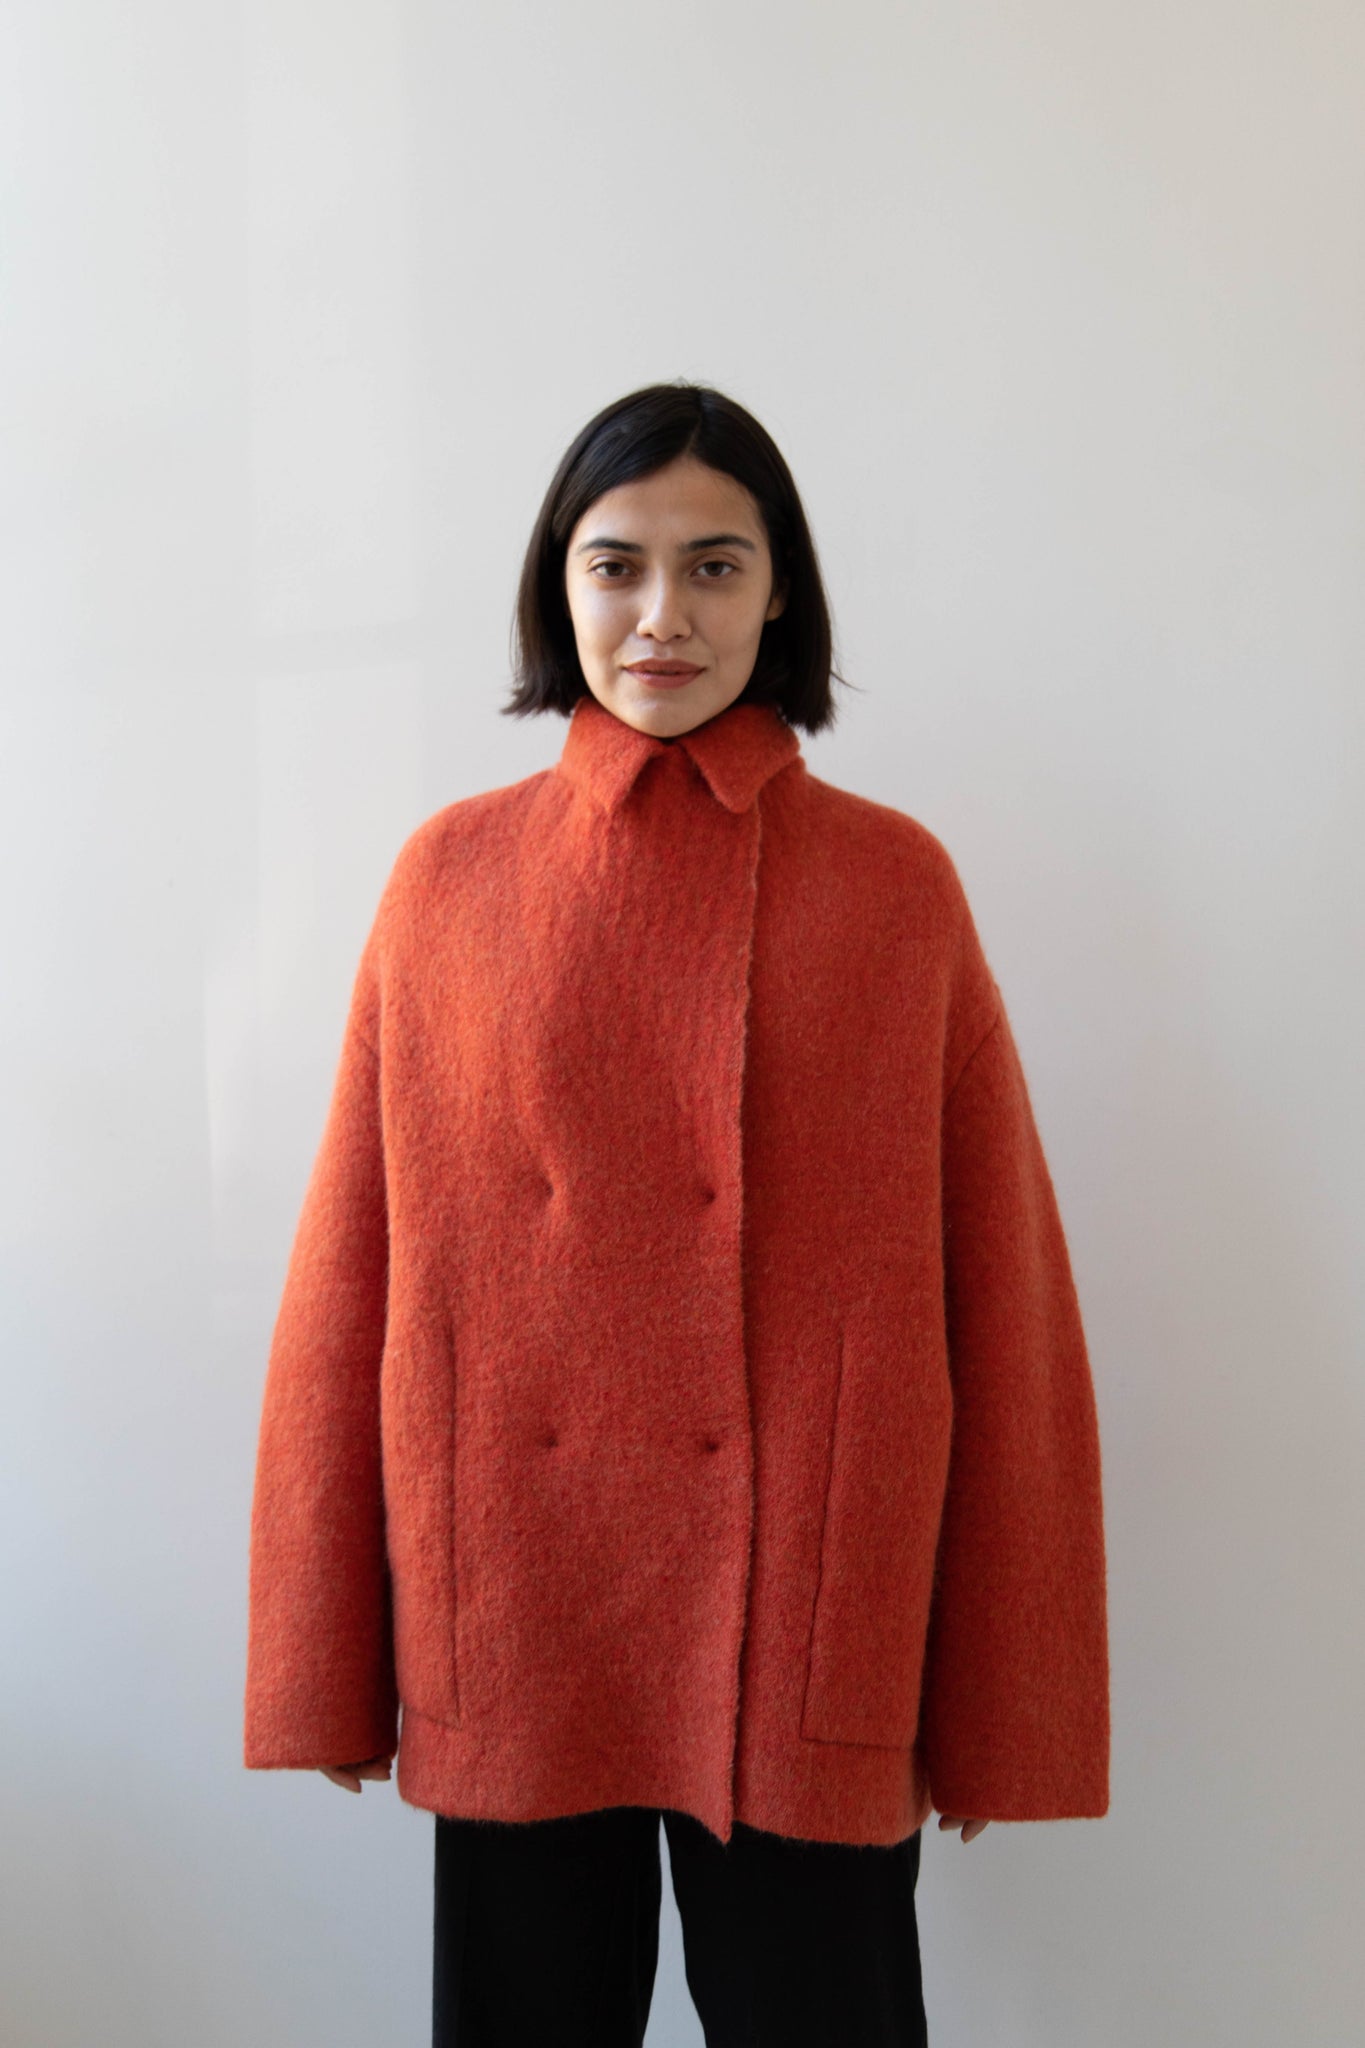 Boboutic | Short Bob Overcoat in Red Orange